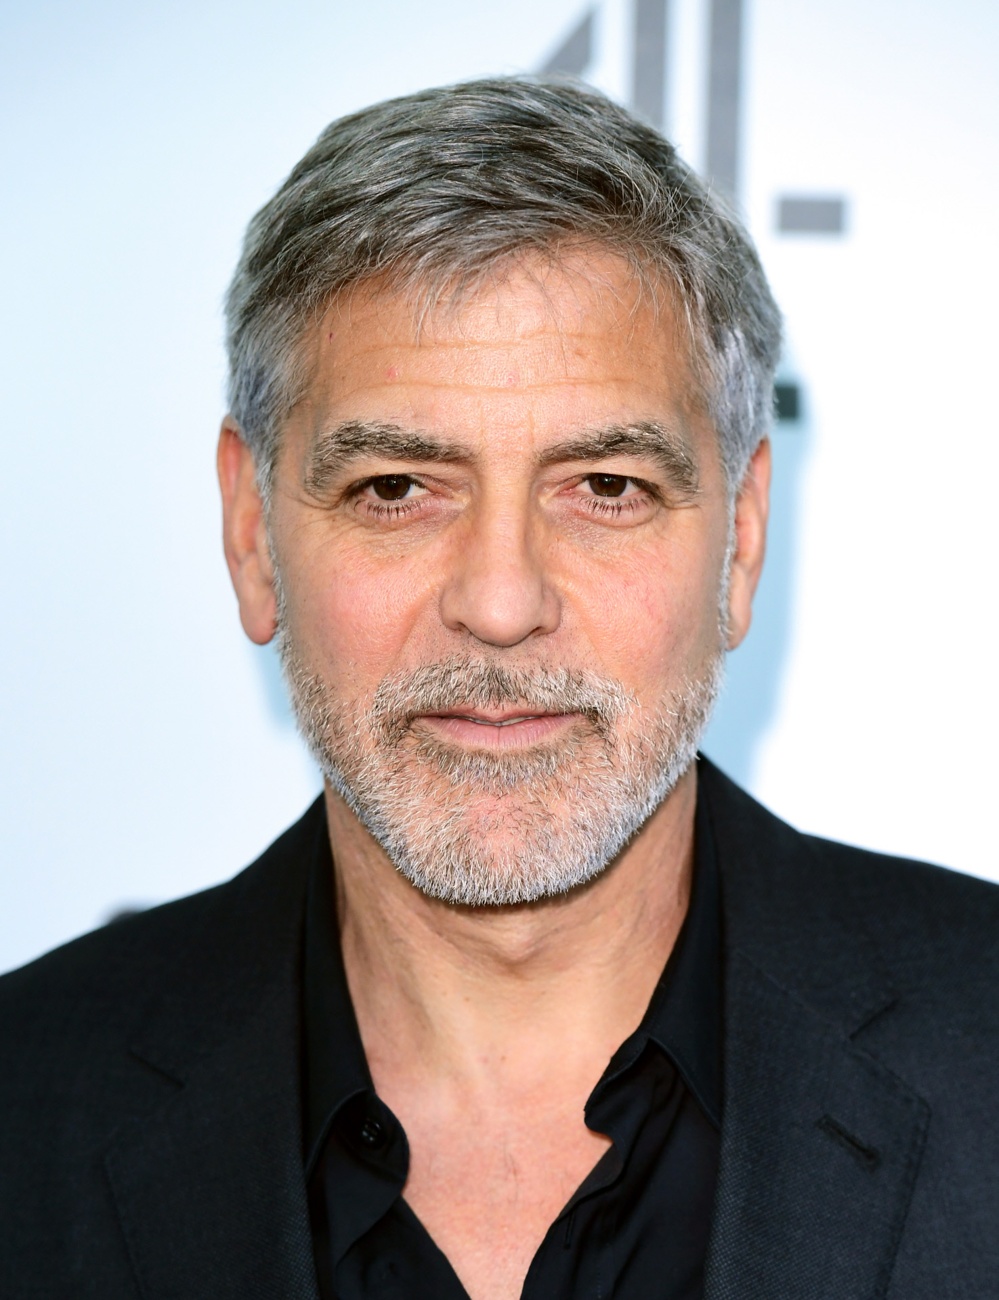 George Clooney is number 8